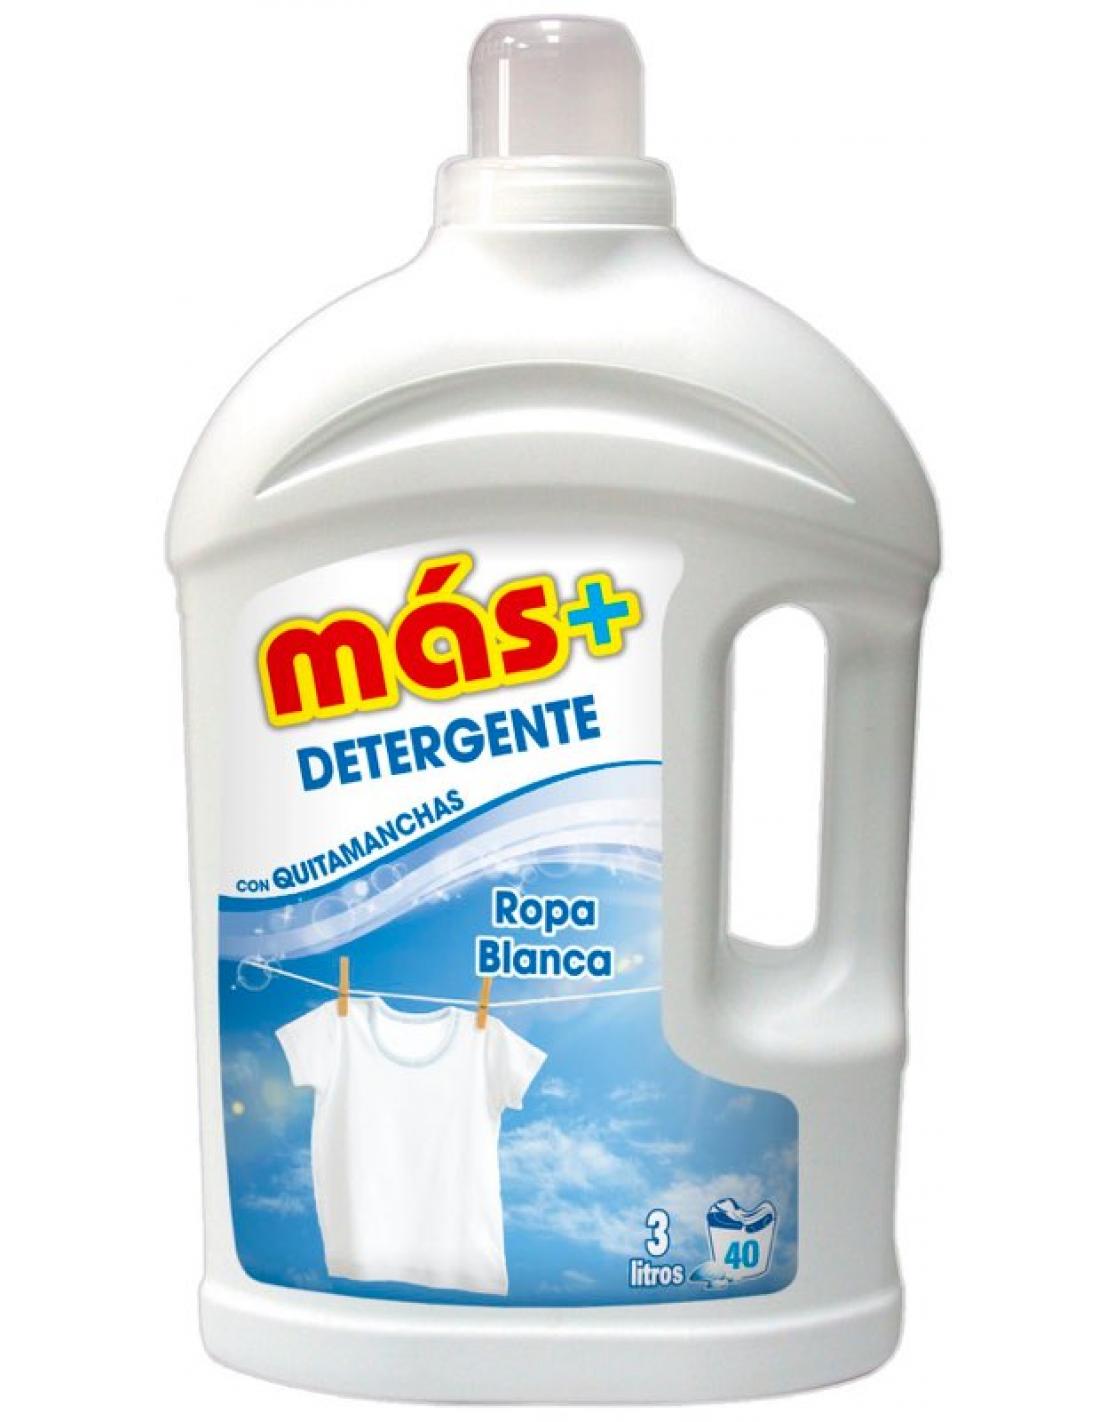 Detergente más ropa blanca ( Litros